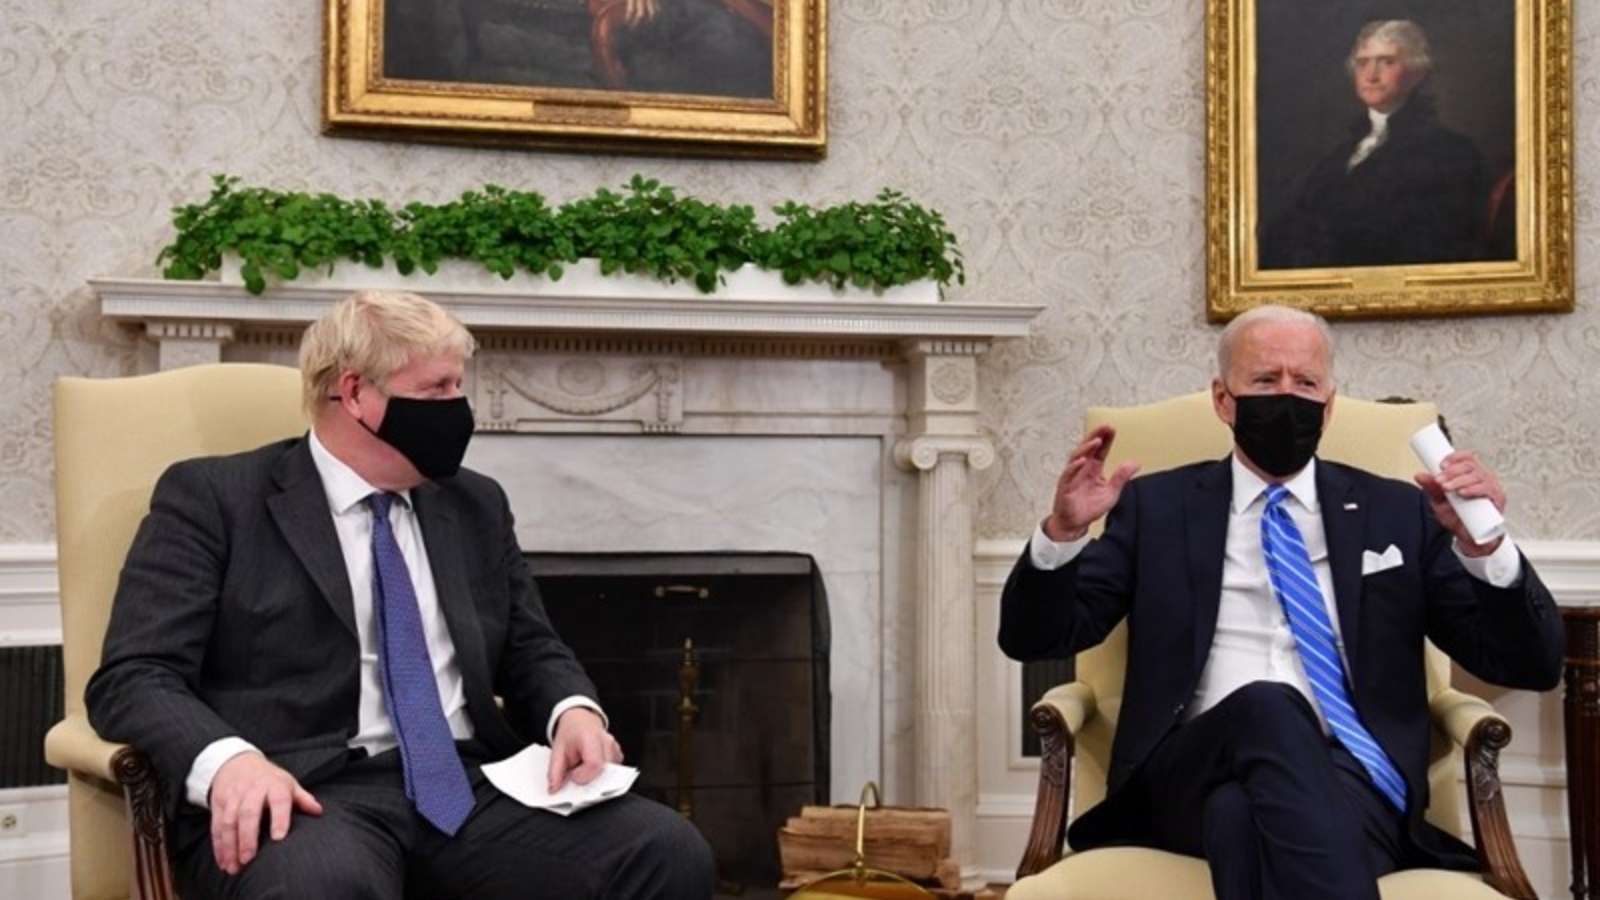 الرئيس الأميركي جو بايدن استقبل رئيس الوزراء البريطاني بوريس جونسون في البيت الأبيض. بتاريخ 22 أيلول/ سبتمبر 2021.